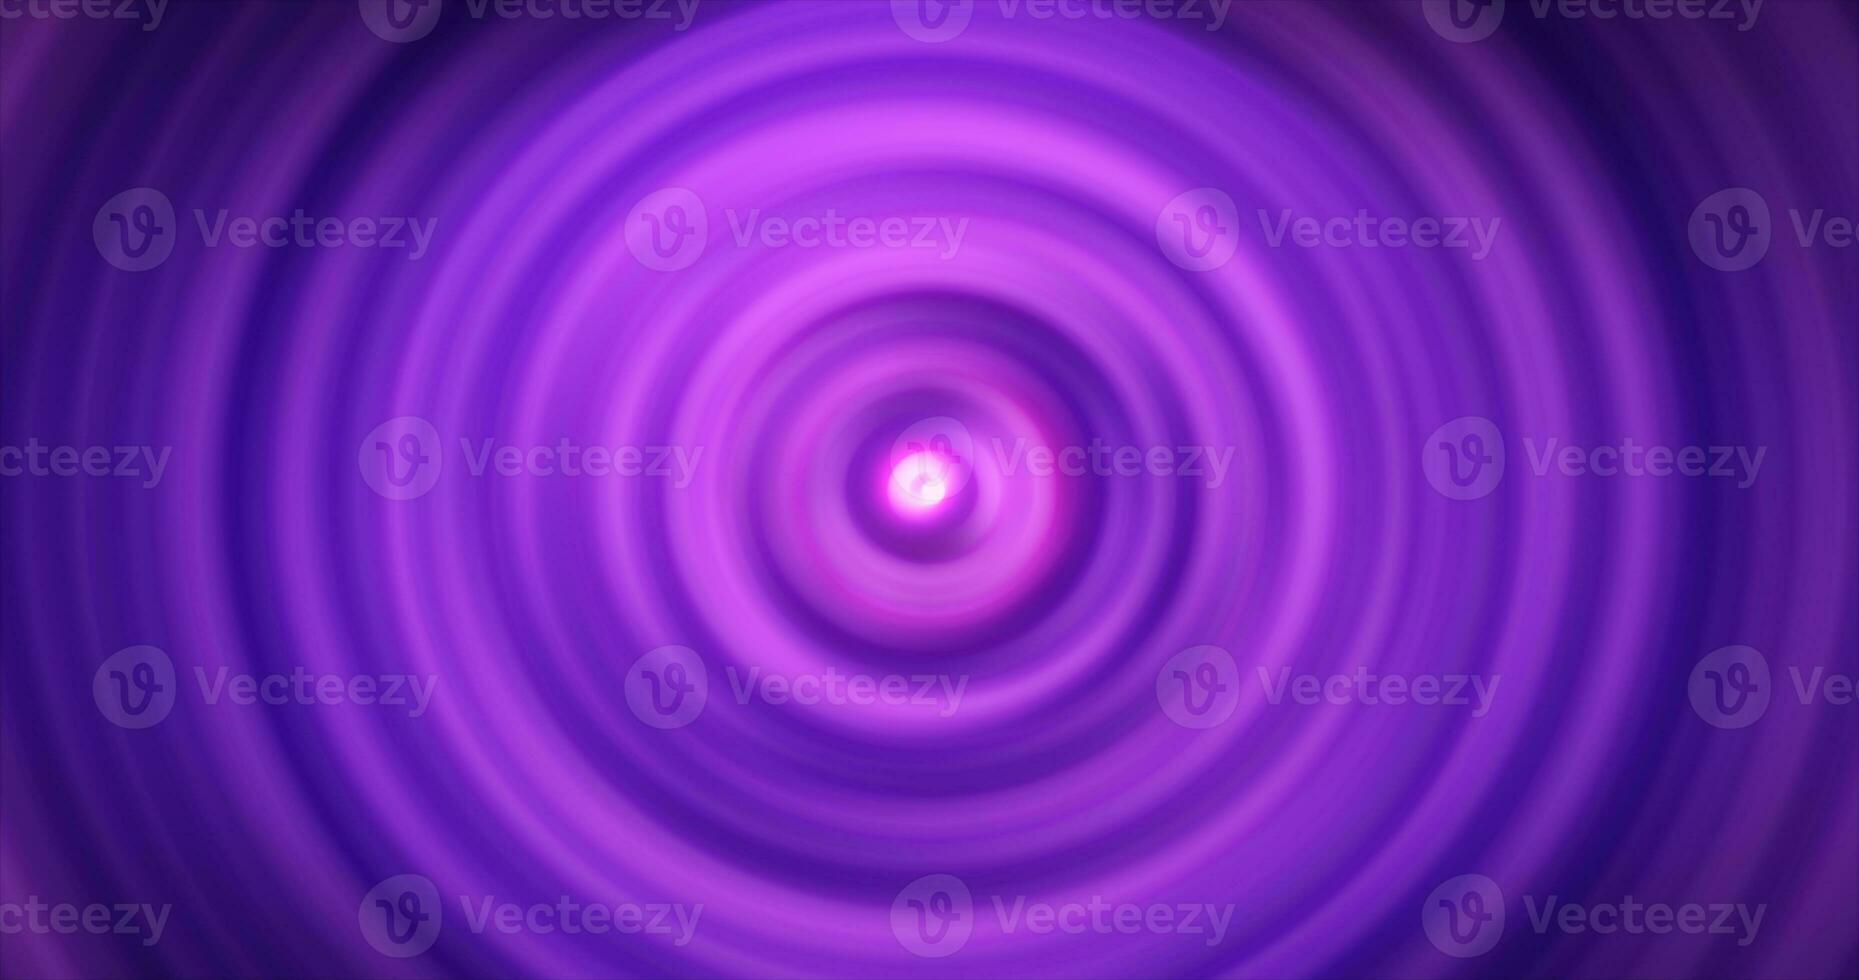 resumen antecedentes de brillante púrpura brillante energía magia radial círculos de espiral túneles hecho de líneas foto